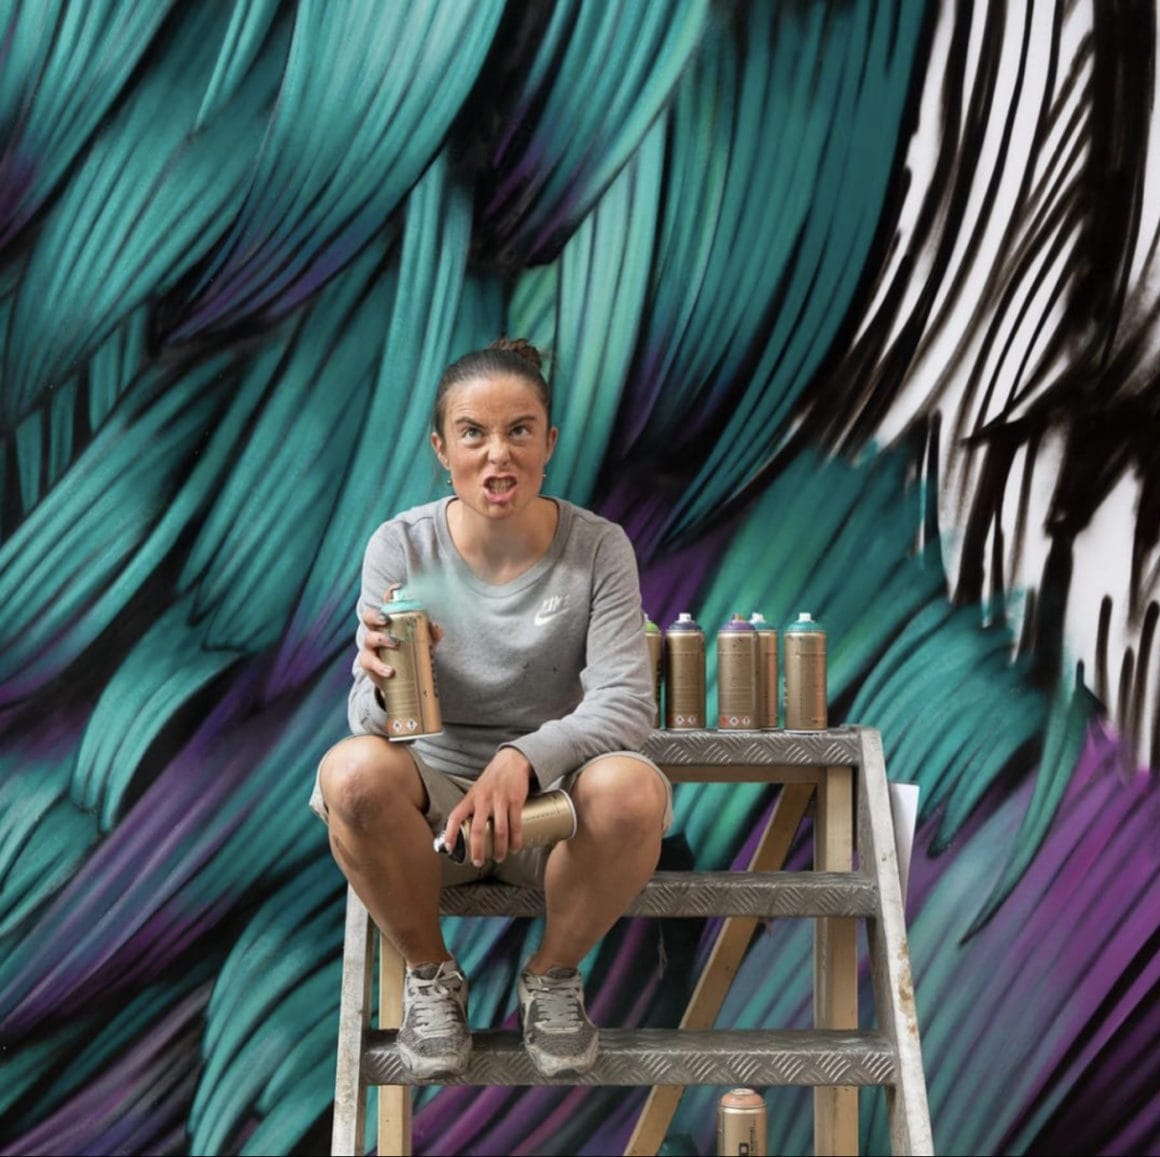 Adèle est assise sur un échafaudage en face de sa fresque murale représentant des plumes bleues, violettes et vertes